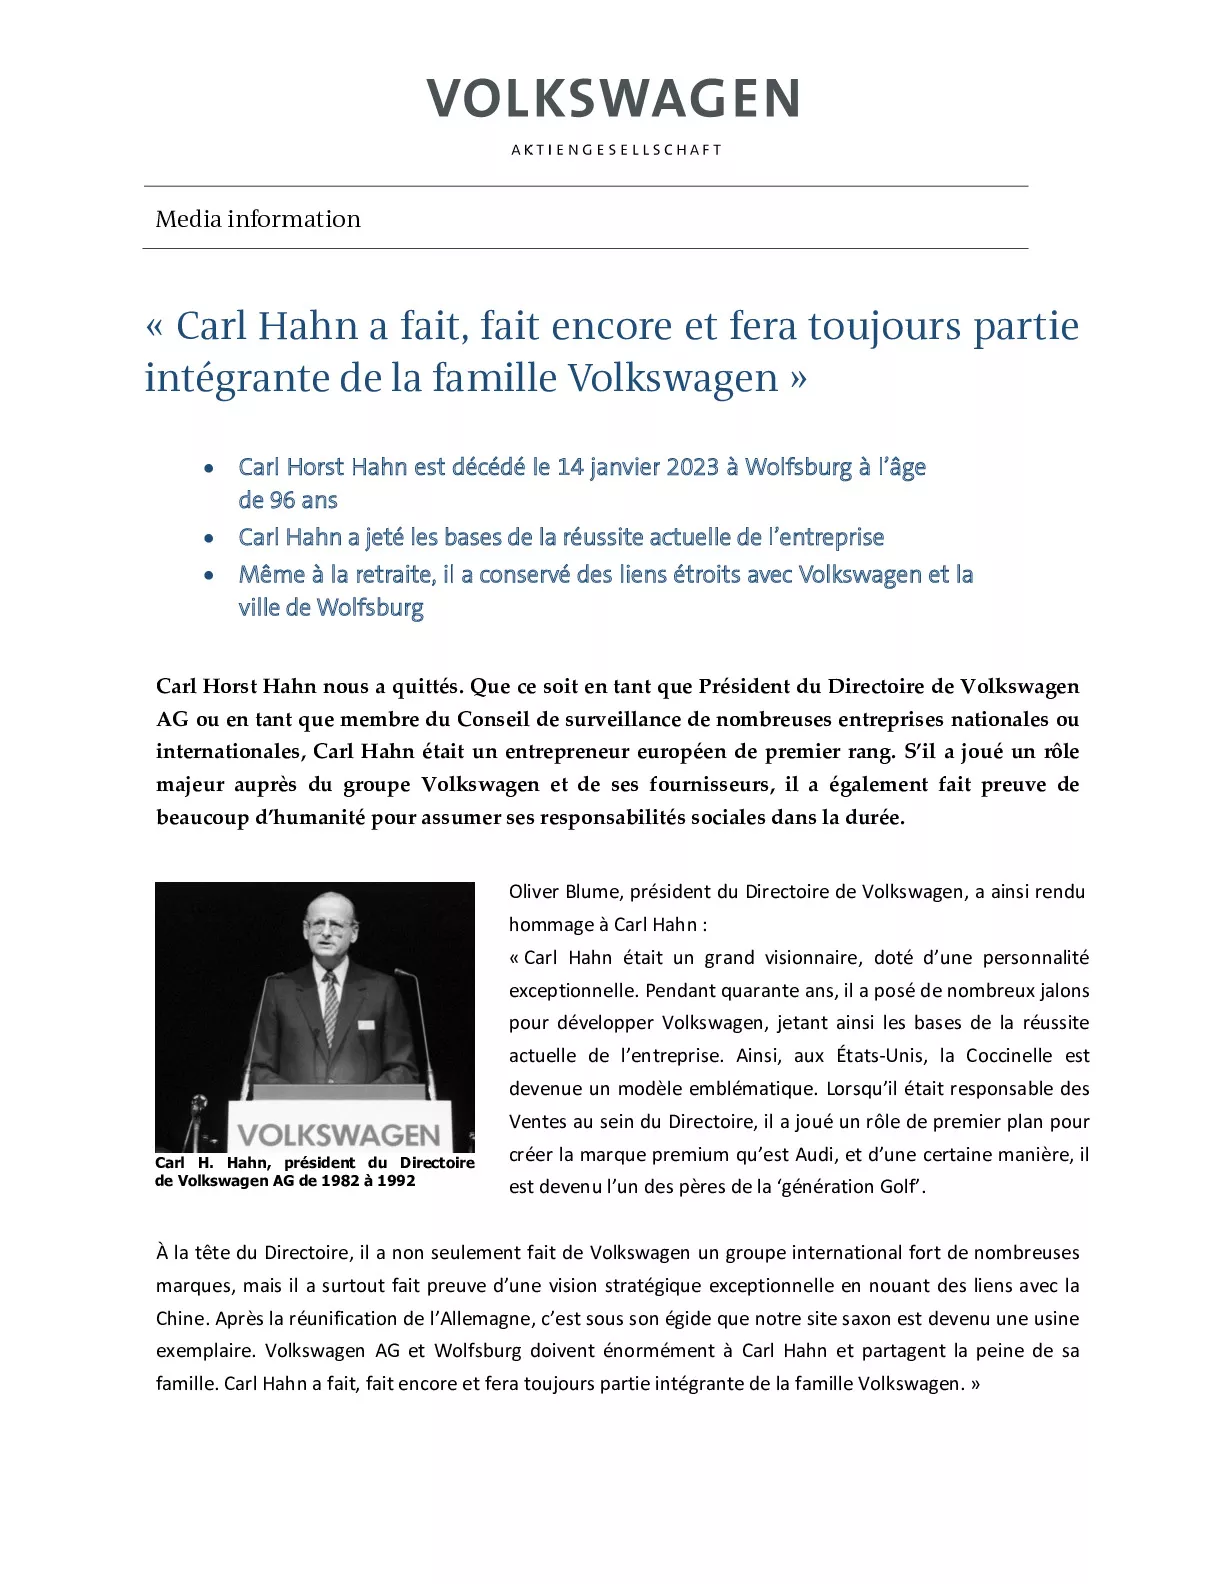 Carl Hahn a fait, fait encore et fera toujours partie intégrante de la famille Volkswagen